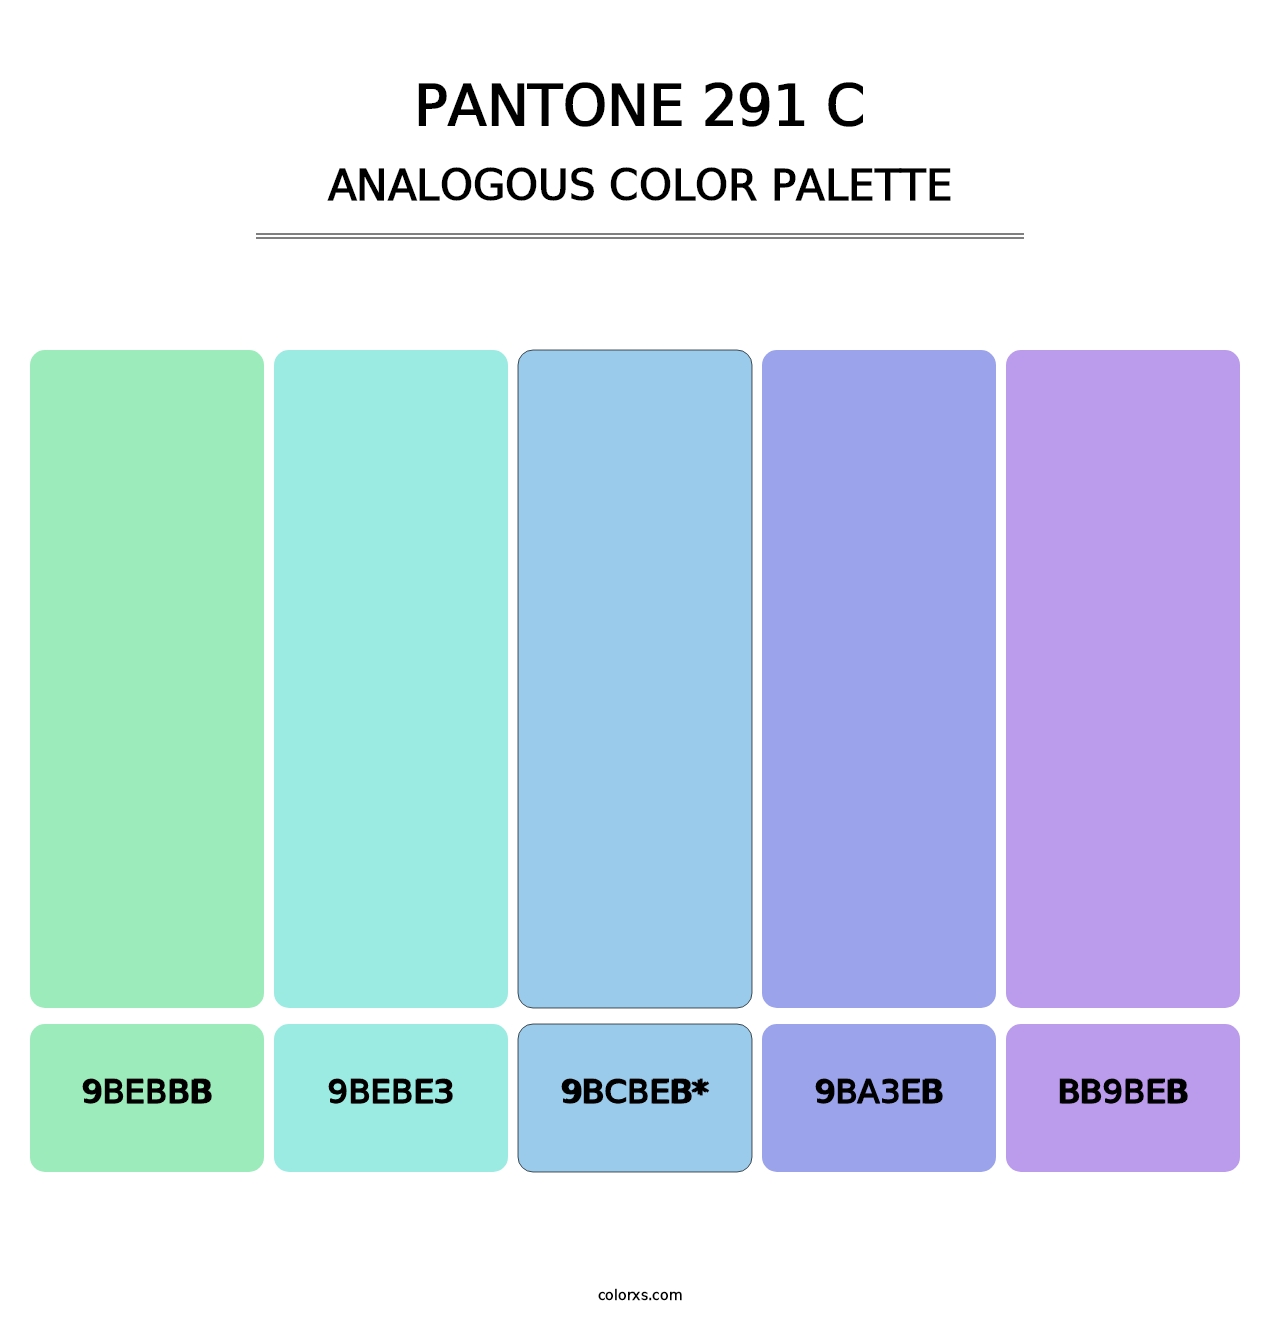 PANTONE 291 C - Analogous Color Palette